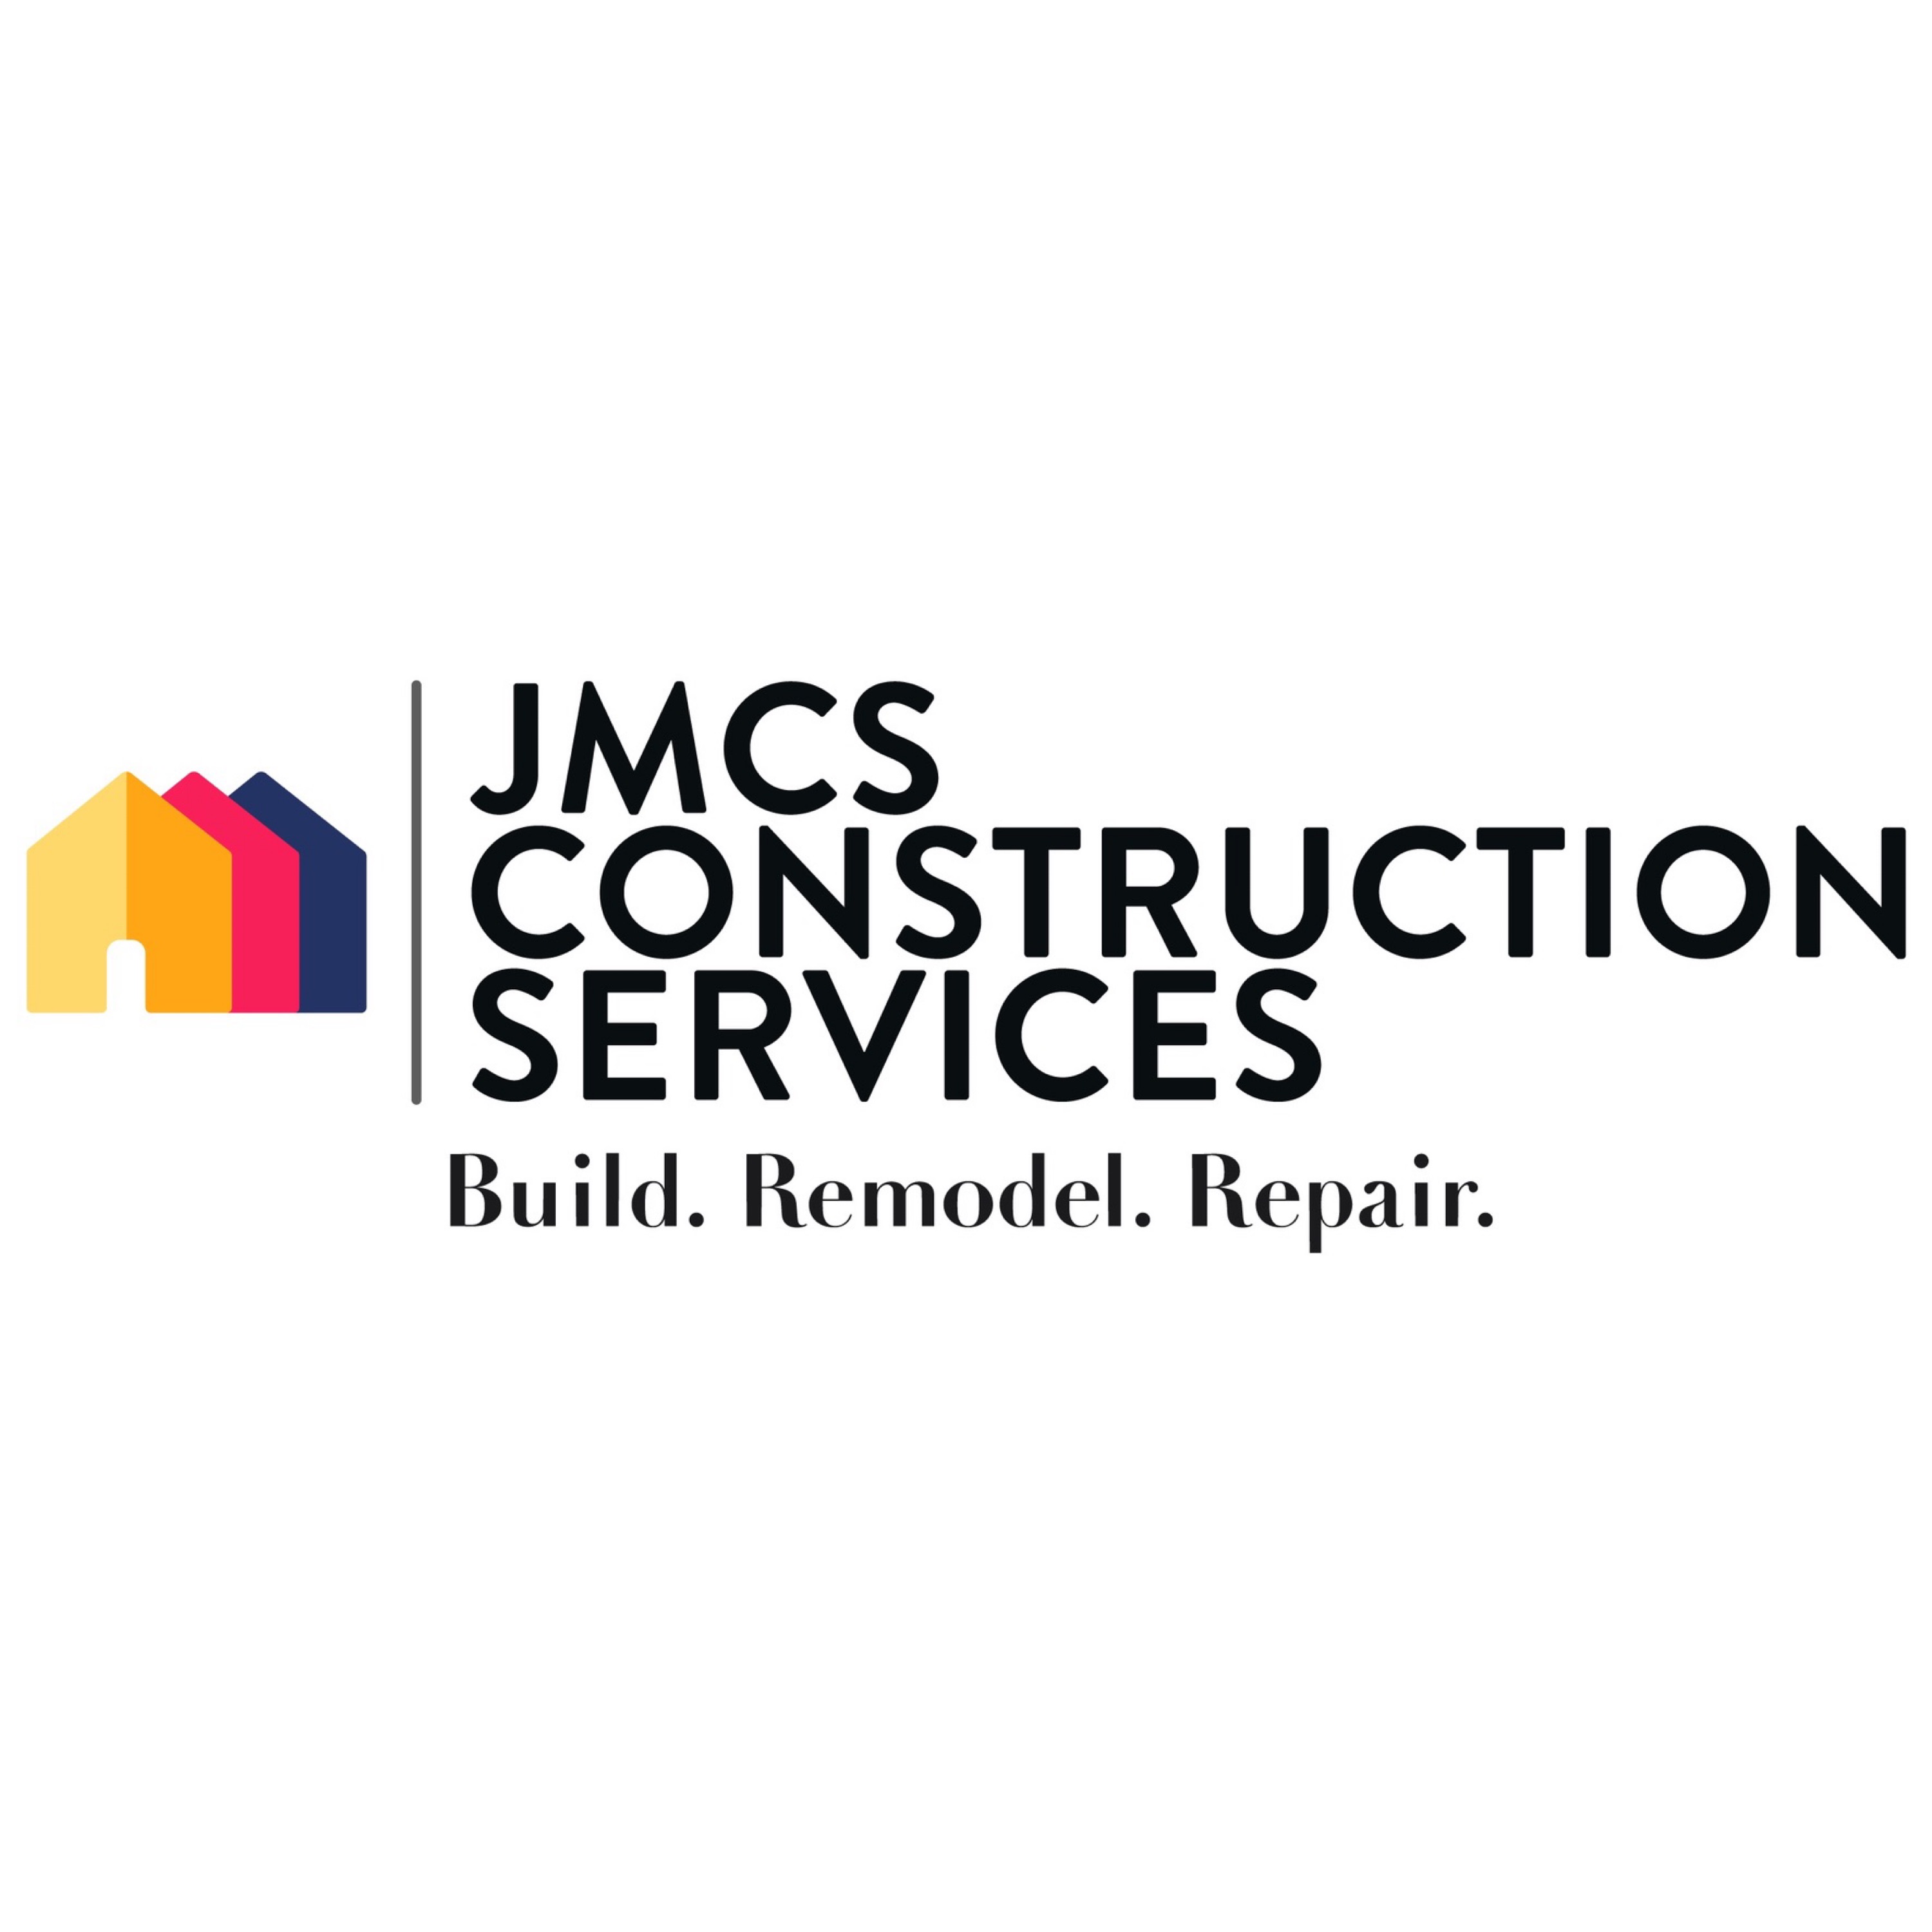 JMCS Construction Services Logo